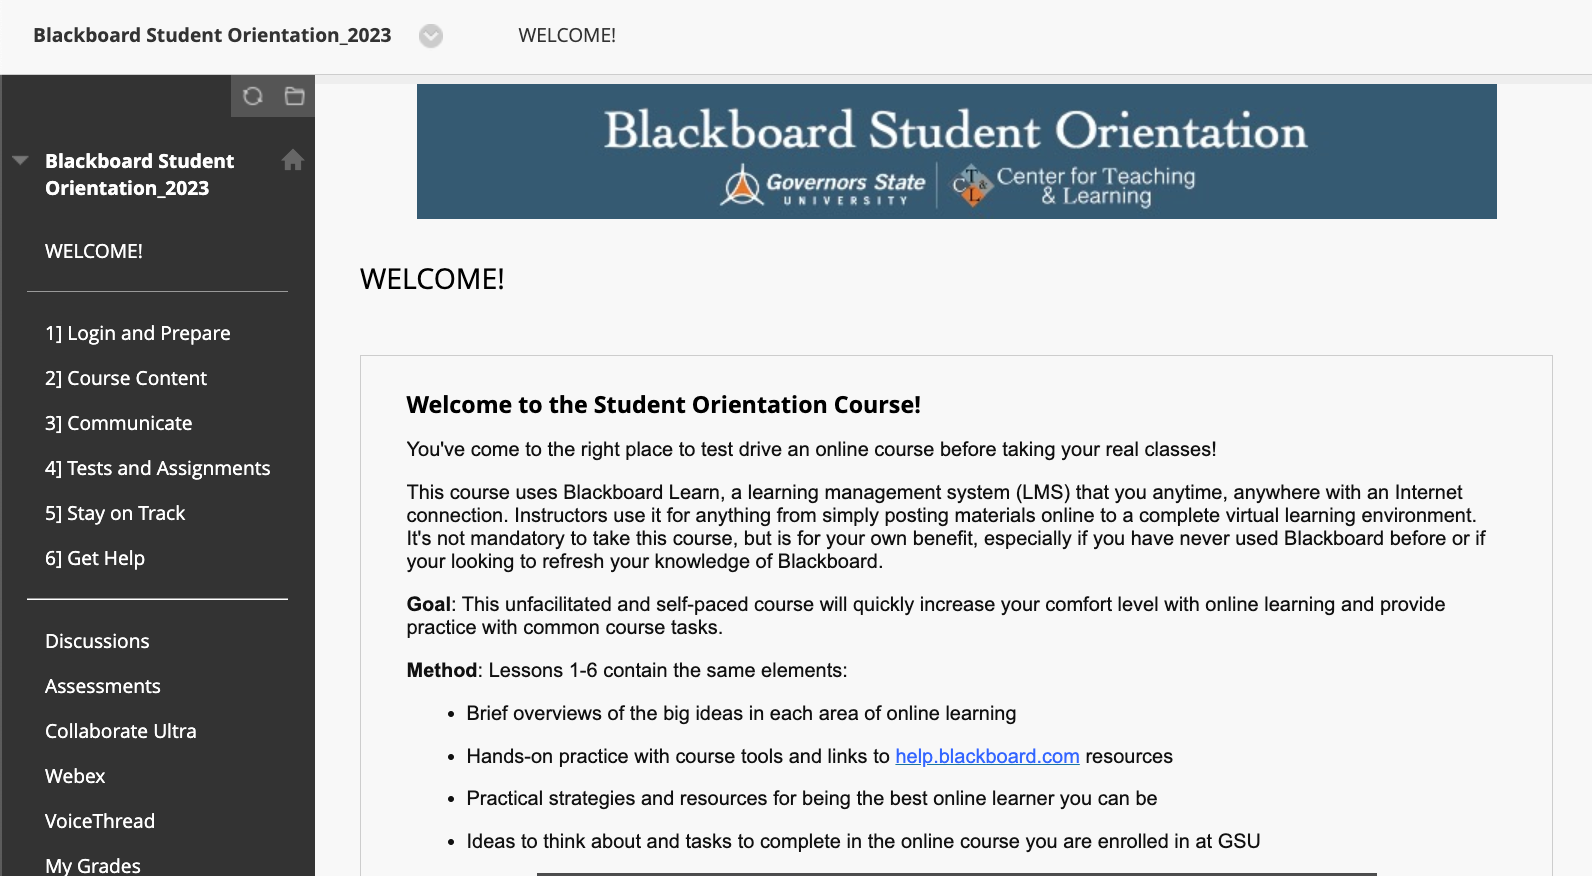 BlackboardStudentOrientation